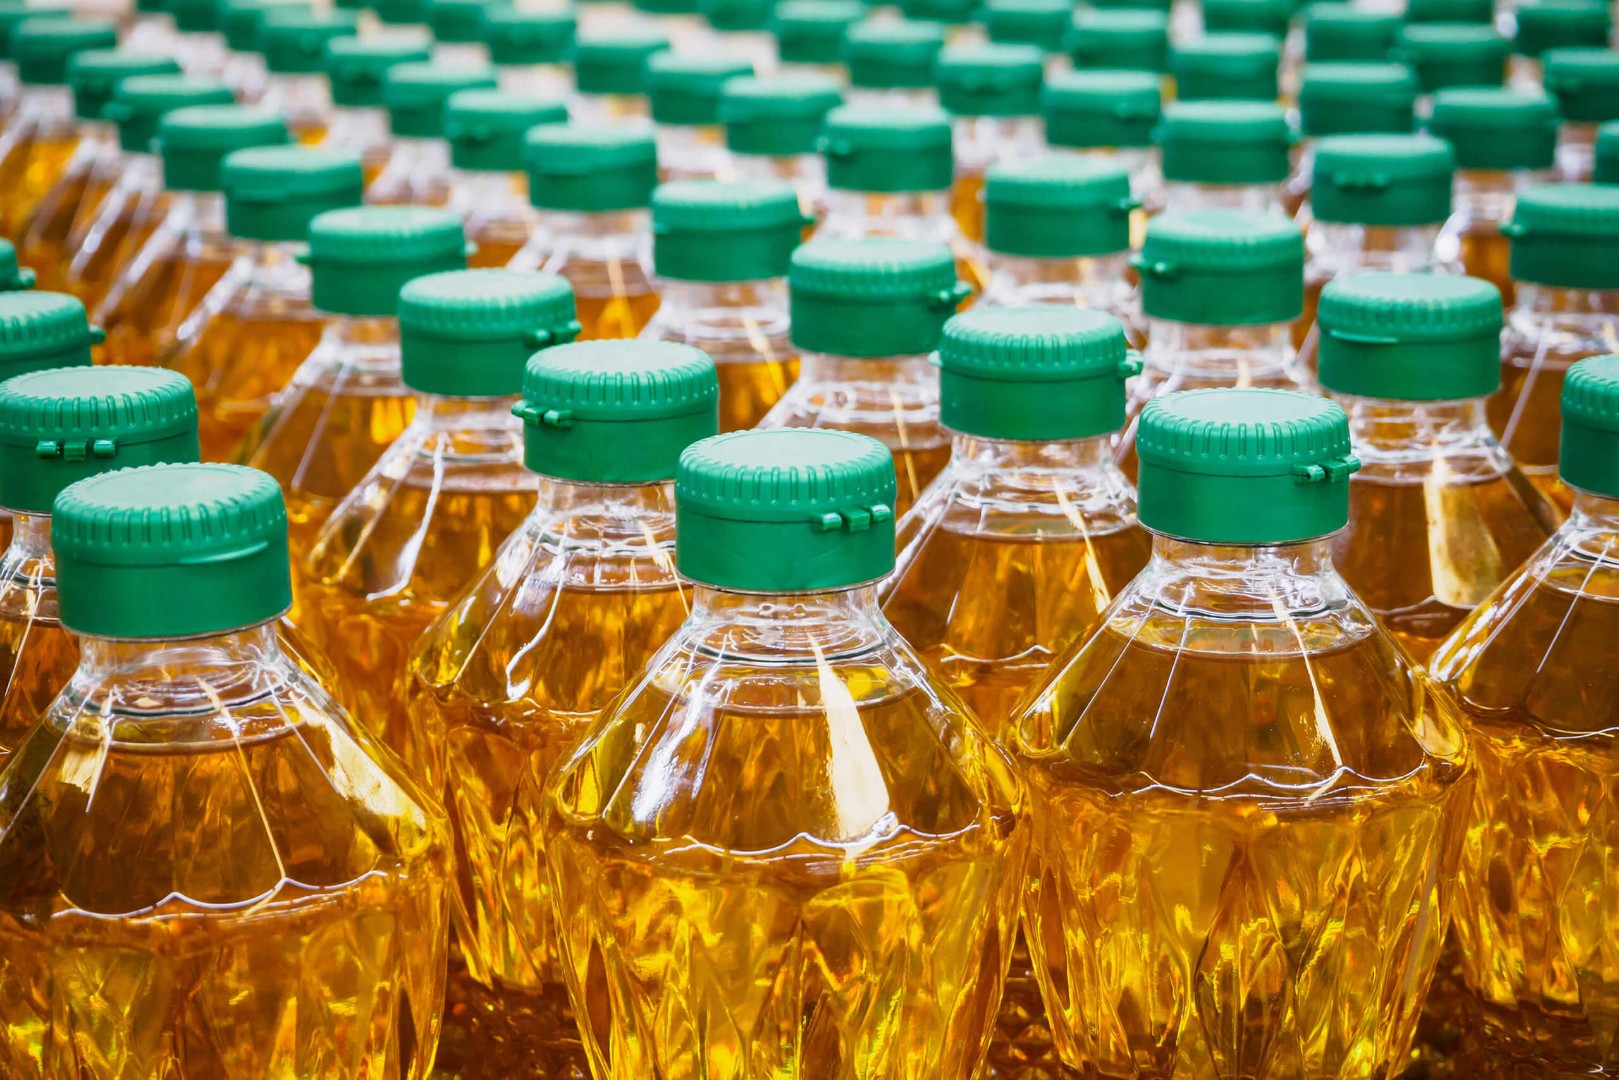  Отрава в красивой бутылке: Роскачество озвучило растительное масло, которое попало в черный список 